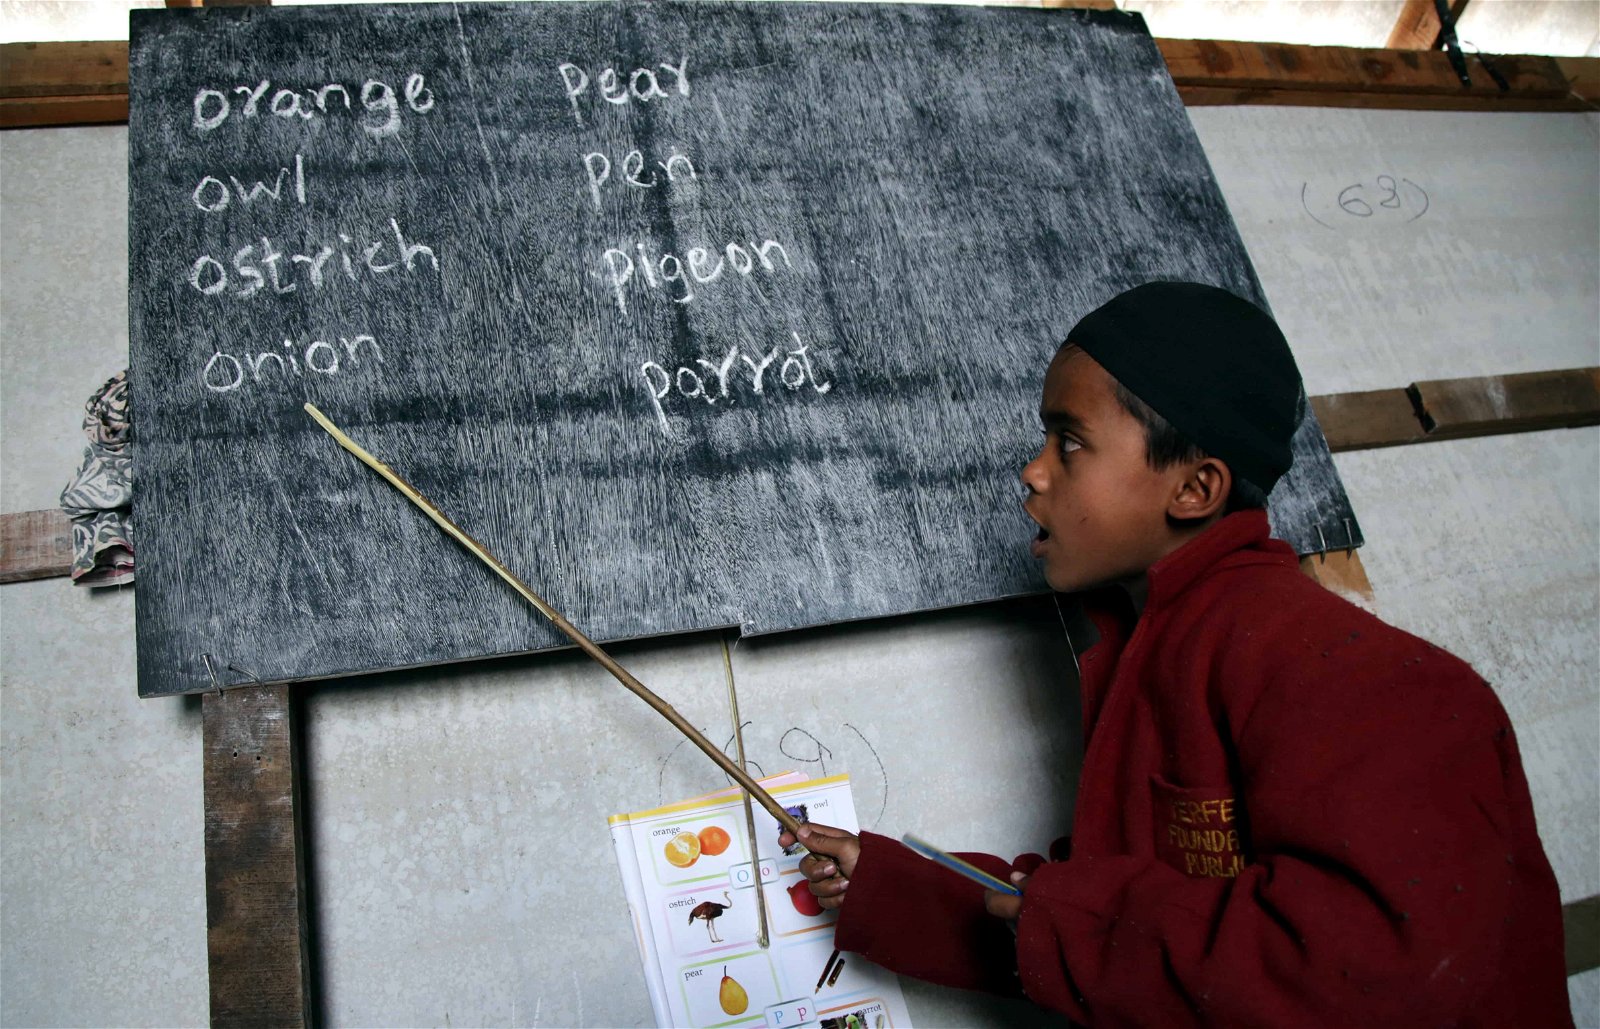 Een kind wijst met een stok naar een bord waar Engelstalige woorden op staan.